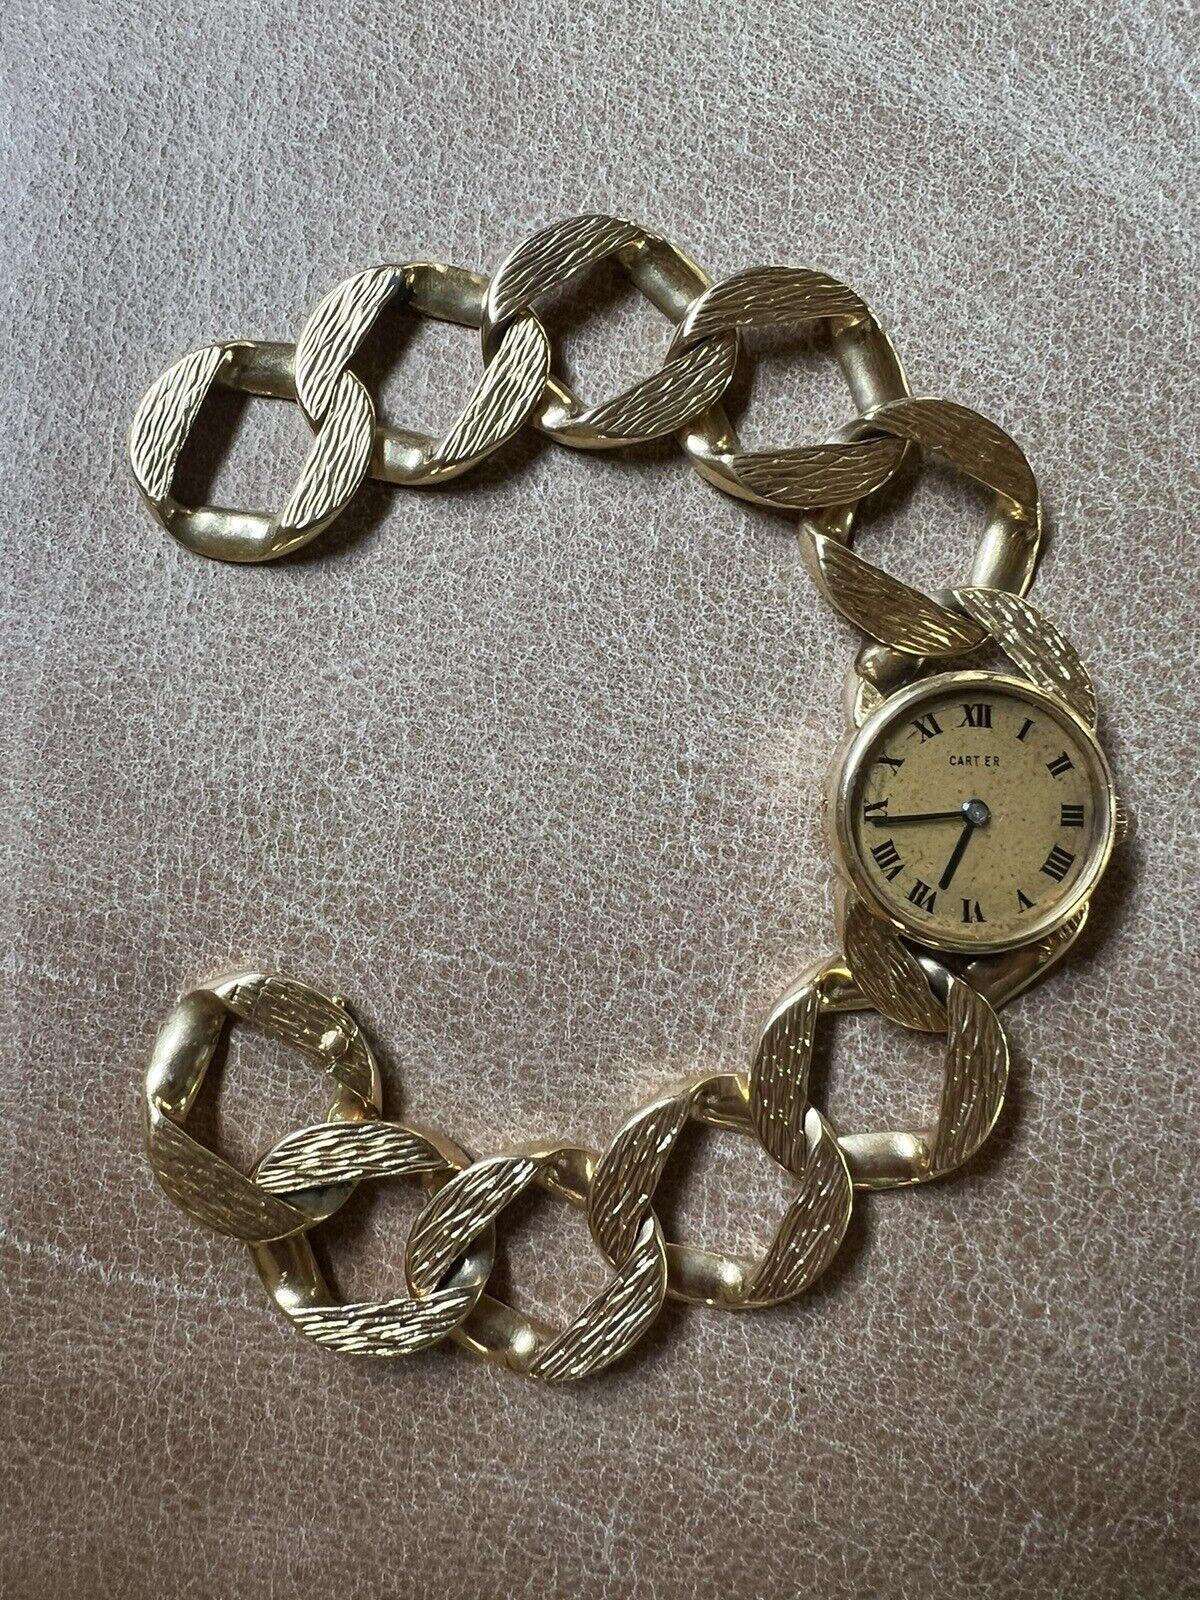 Cartier London Jaeger LeCoultre 18k Yellow Gold Curb Link Bracelet Watch Circa 1960s Vintage

Voici l'occasion d'acquérir une magnifique montre bracelet de créateur, très prisée des collectionneurs.  

La longueur est de 7,25 pouces.  Le poids est